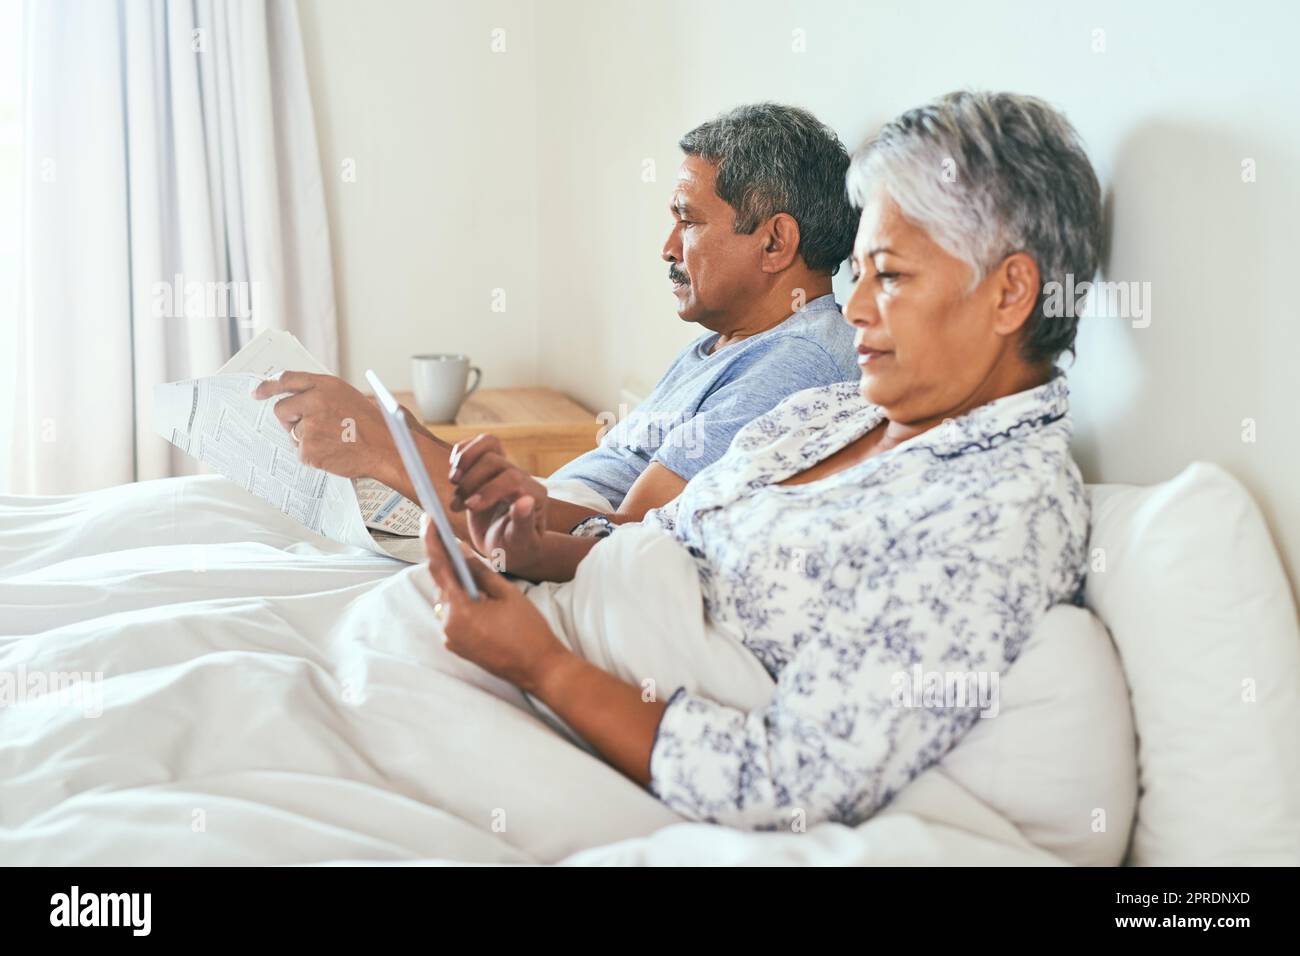 Die einfachen Dinge im Leben sind immer großartig. Ein entspanntes, reifes Paar liegt im Bett, während es morgens auf einem digitalen Tablet surft und die Zeitung zu Hause liest. Stockfoto